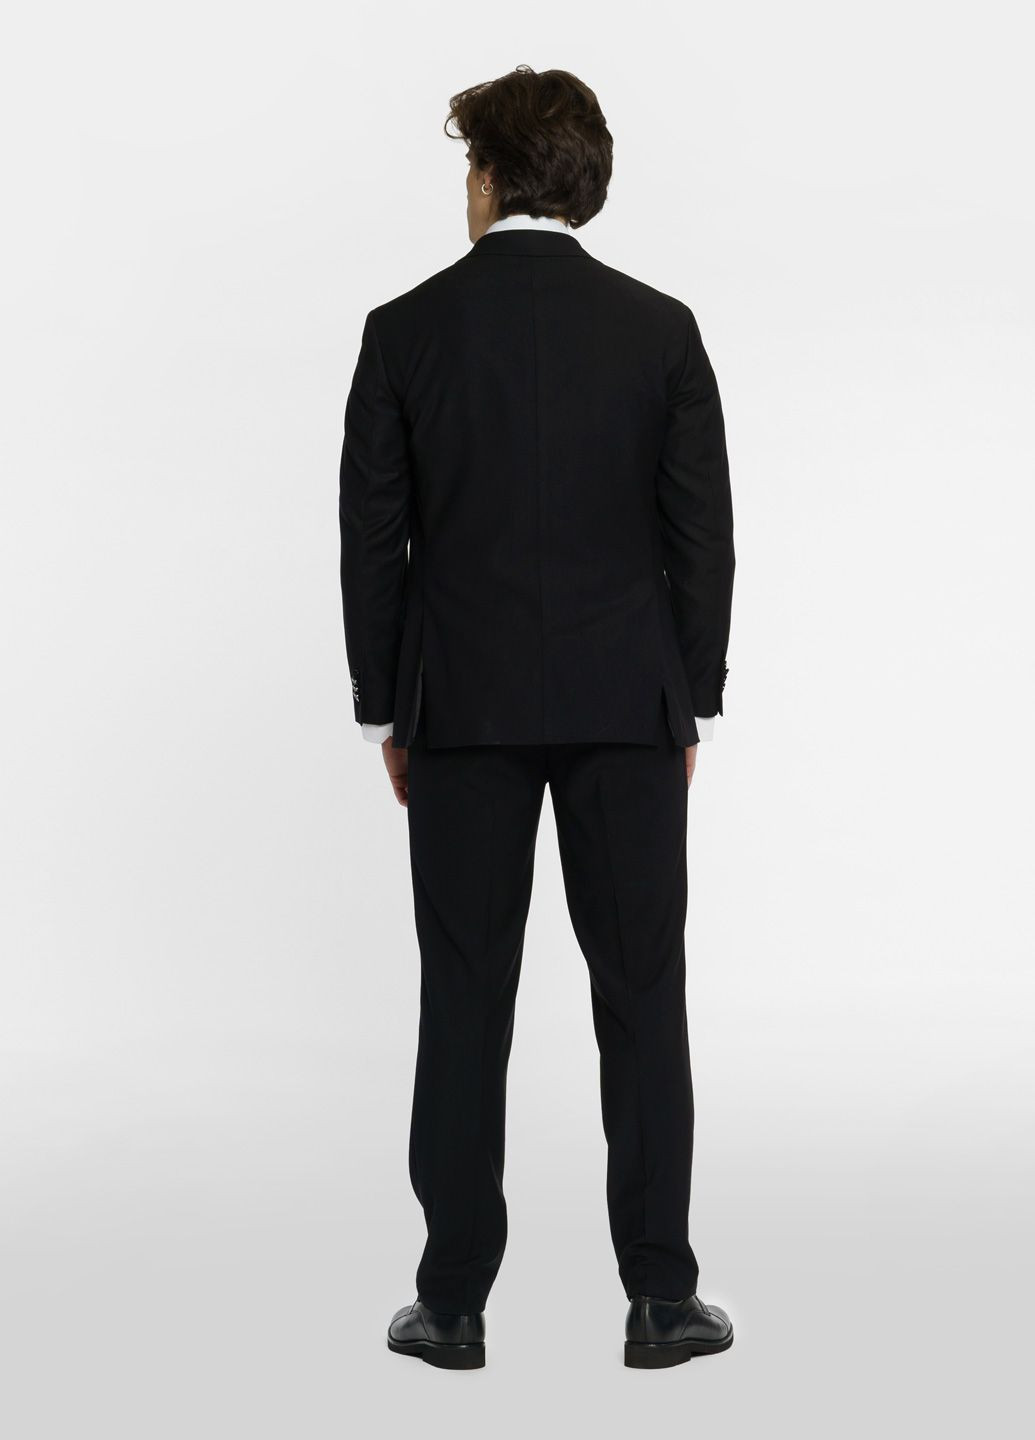 Черный демисезонный костюм мужской черный Arber MILANO New/MARCO